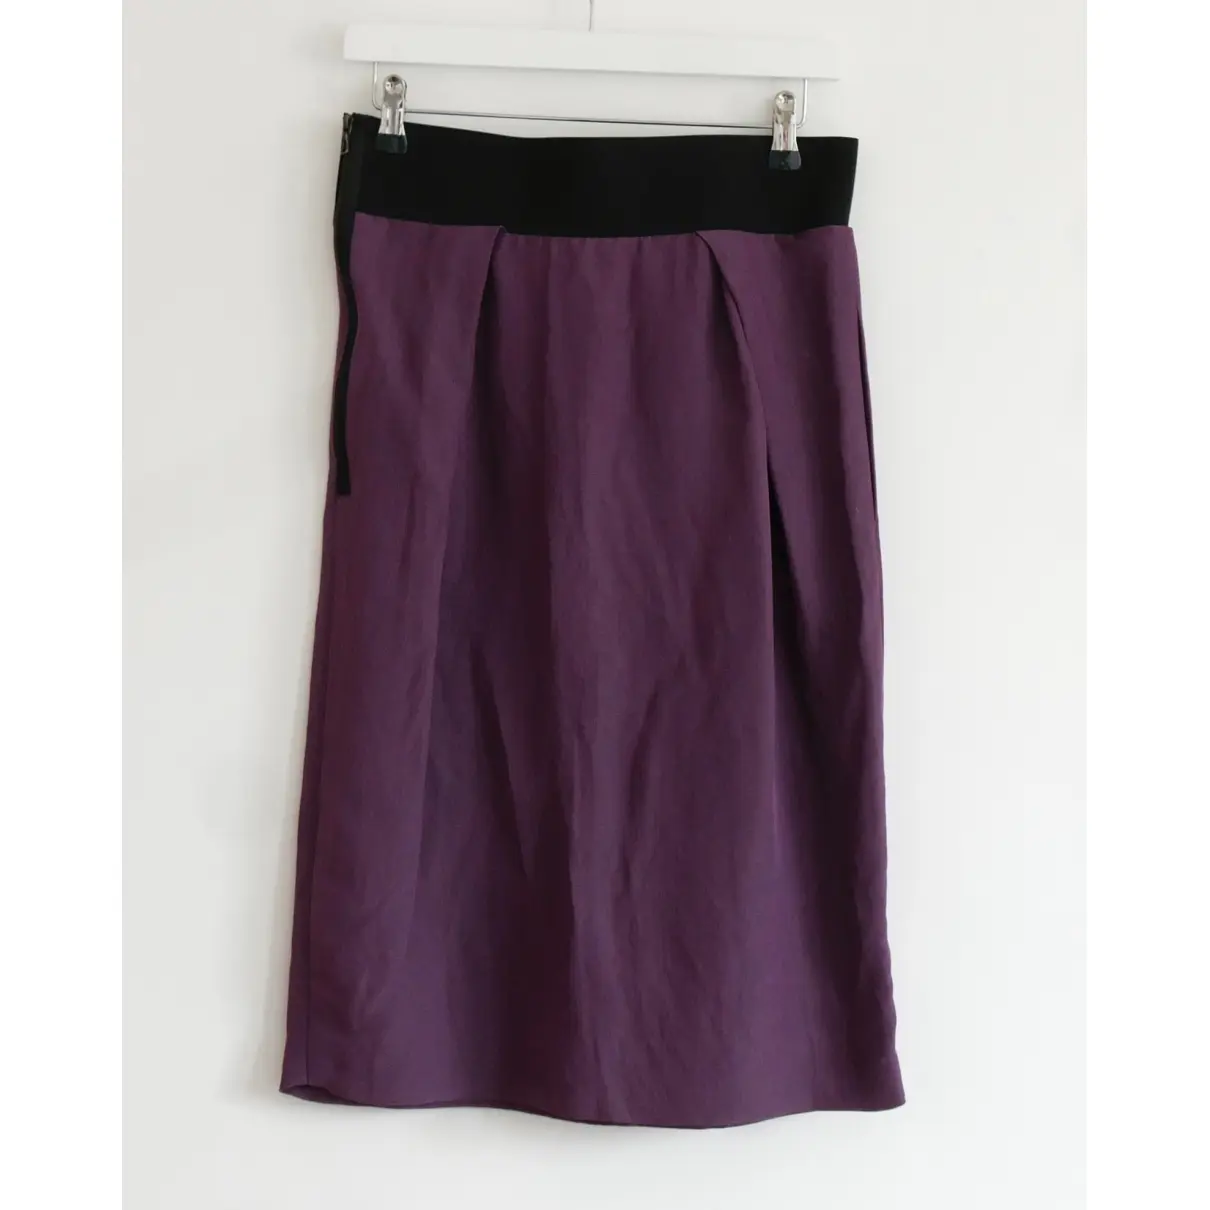 Luxury Lanvin Skirts Women - Vintage